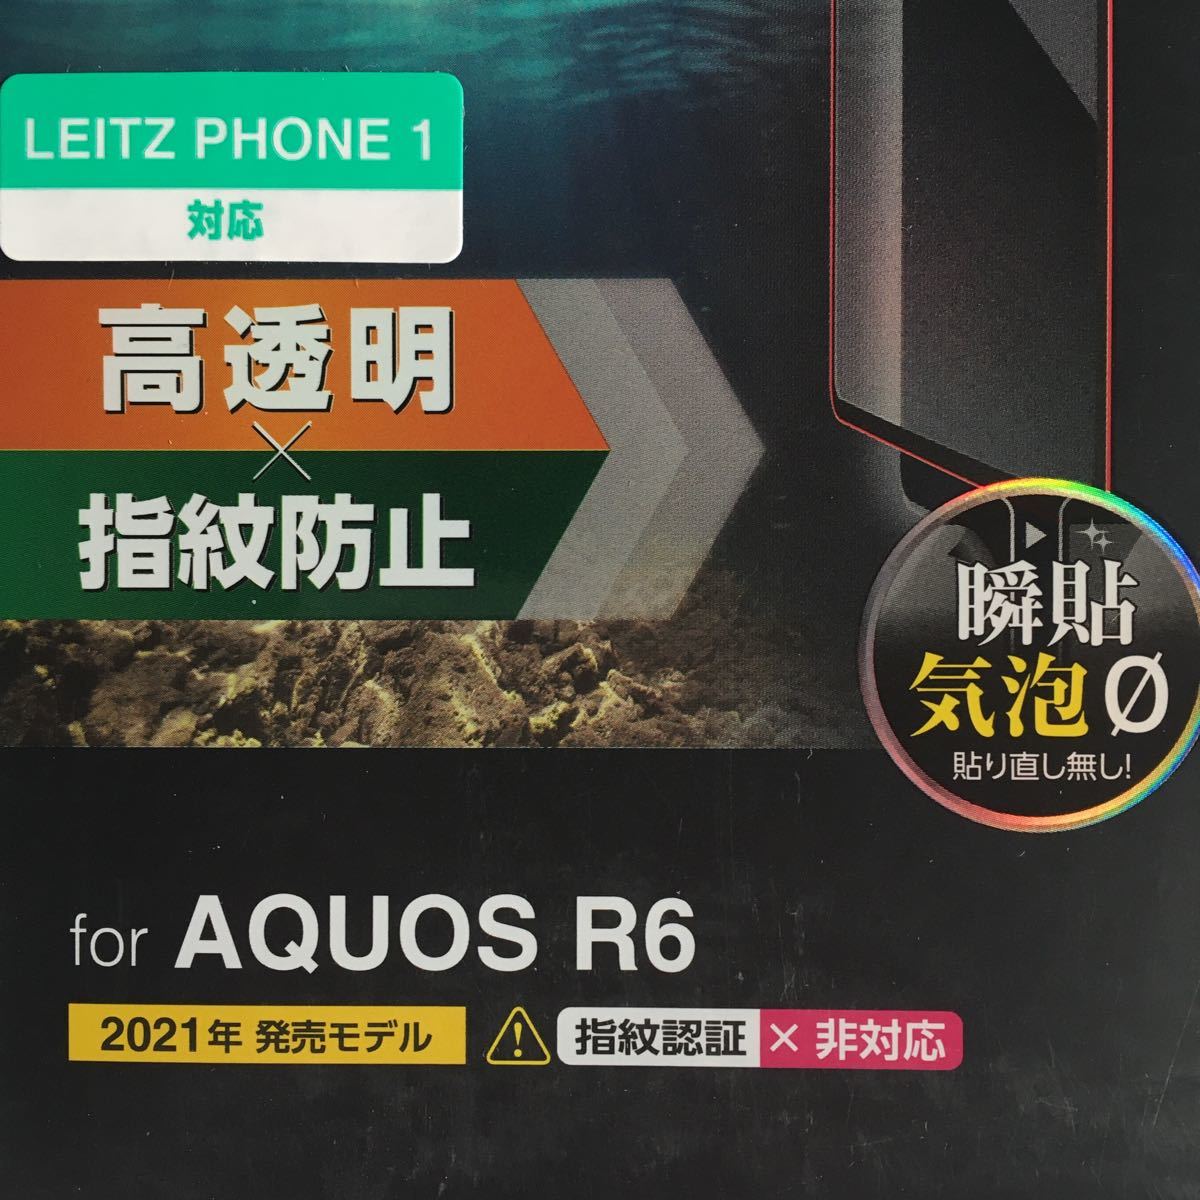 [指紋認証非対応] AQUOS R6 フルカバー ガラスフィルム AQUOS R6 SH-51B LEITZ PHONE 1 223